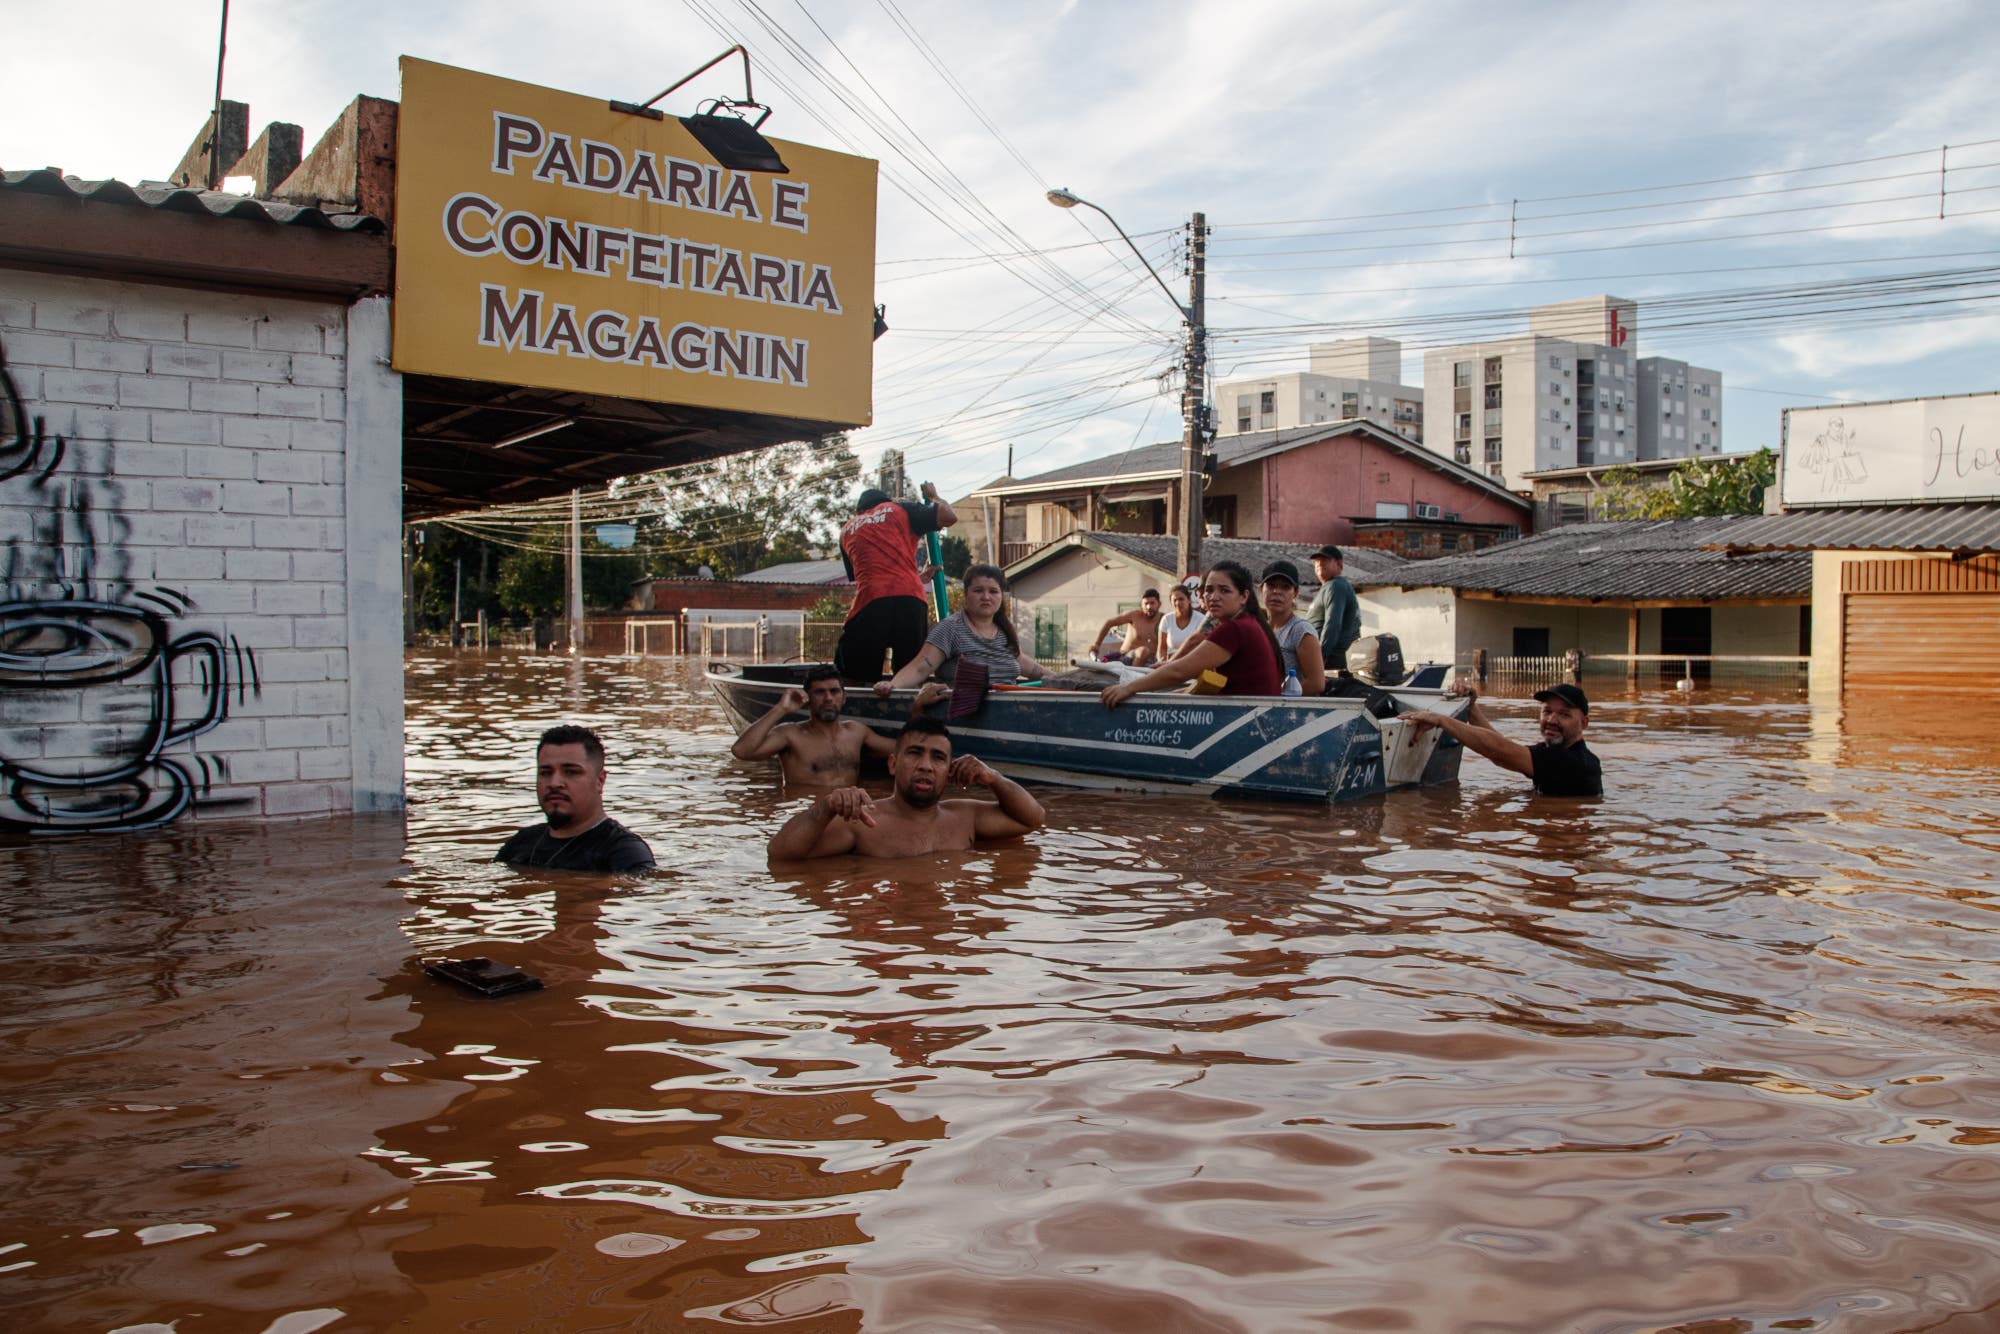 Ein Rettungsteam aus mehreren Männern evakuiert Frauen, Kinder und Männer in einem Boot in Rio Grande do Sul. Die Retter stehen bis zur Brust im braunen Wasser vor einer Bäckerei mit einem gelben Werbeschild.